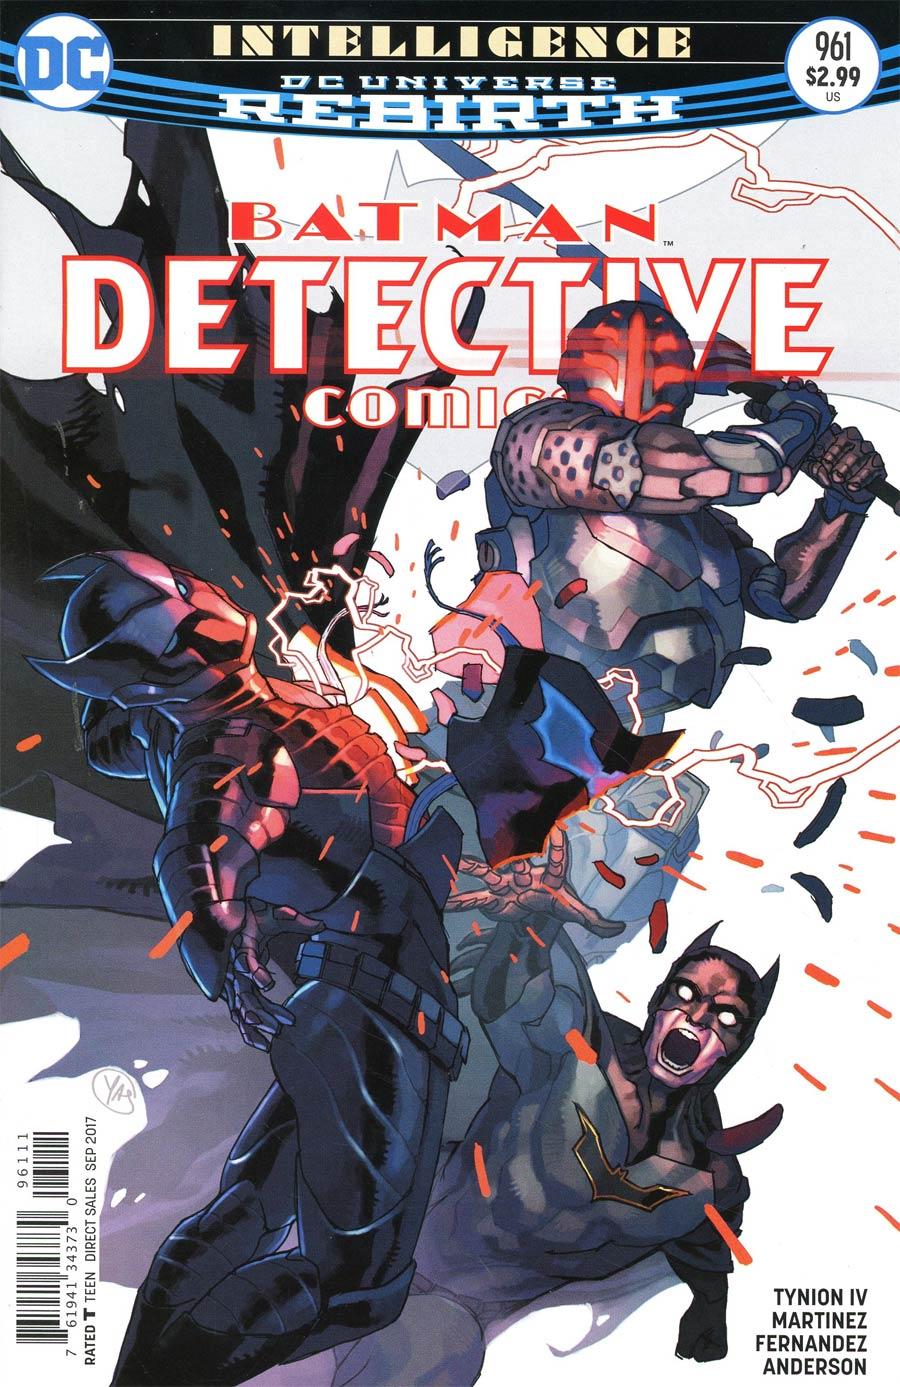 Detective Comics Vol. 2 #961